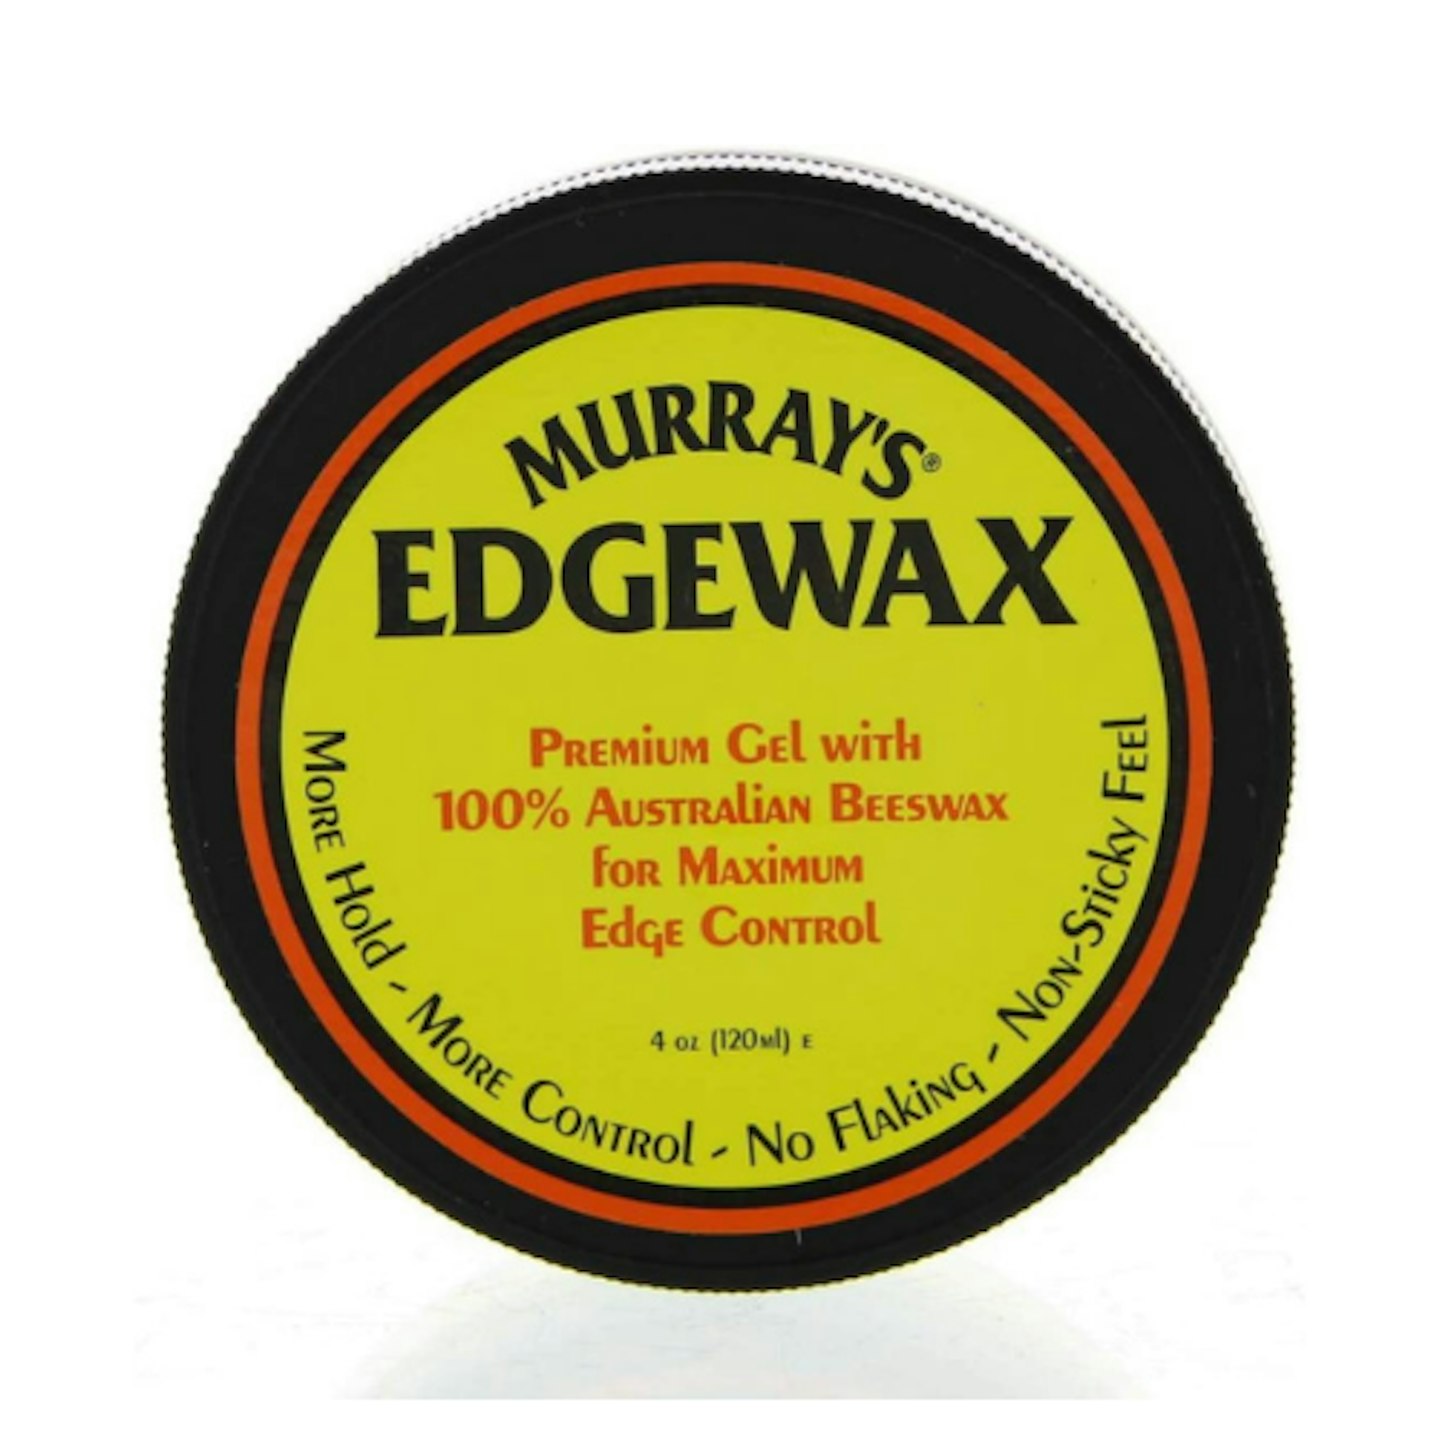 Murray's Edgewax Premium Gel on white background